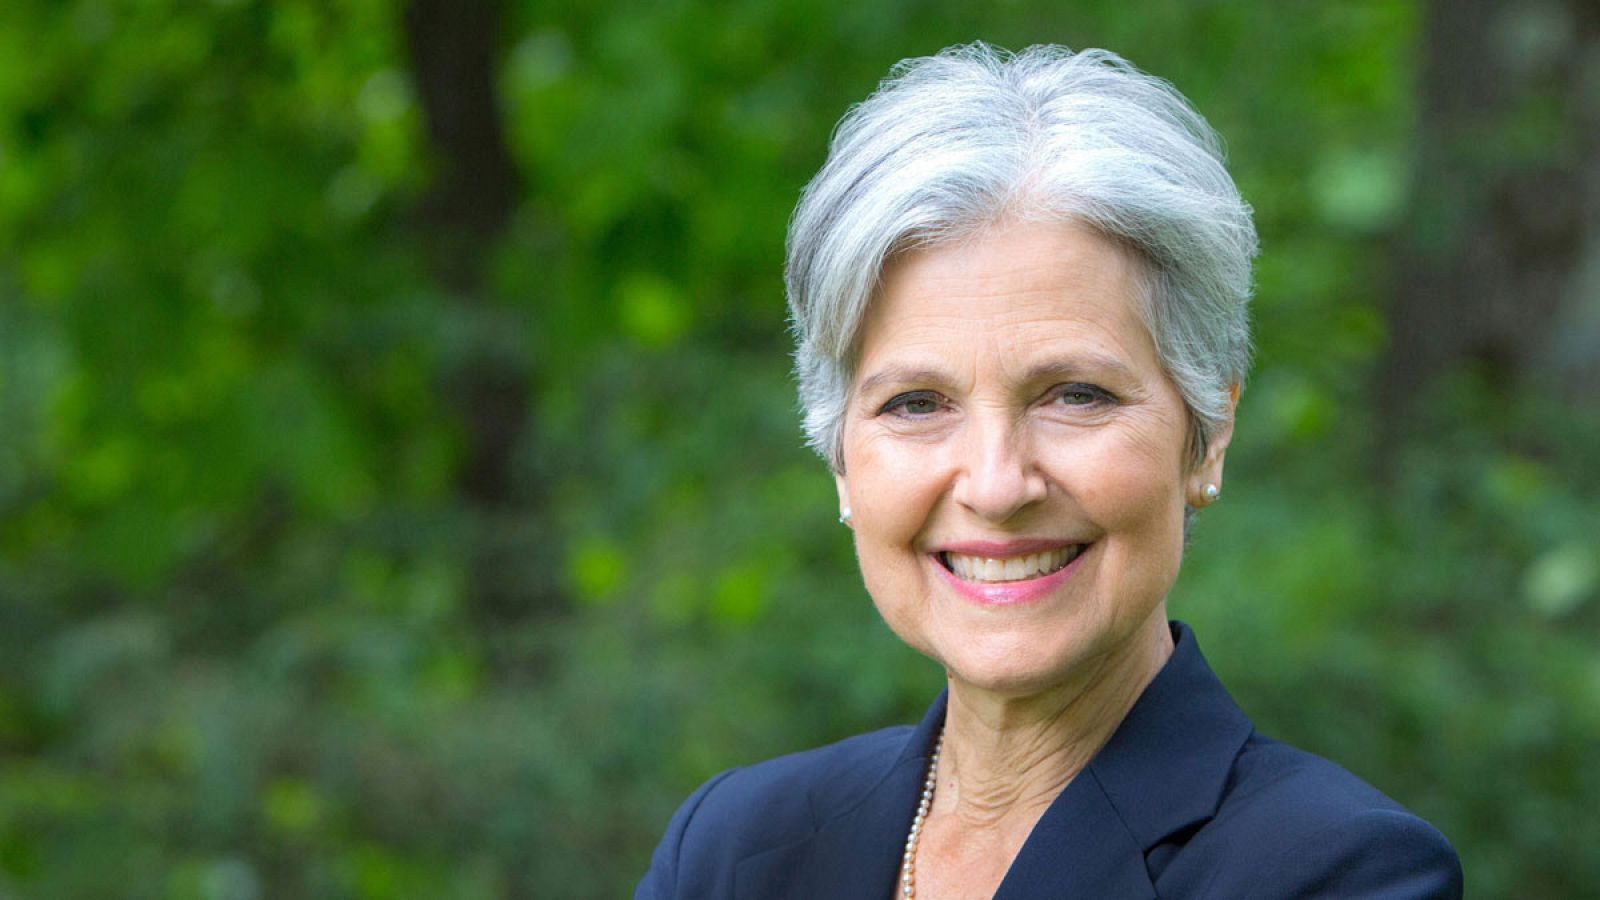 Imagen facilitada por el Partido Verde de EE.UU.  de su candidata presidencial, Jill Stein.